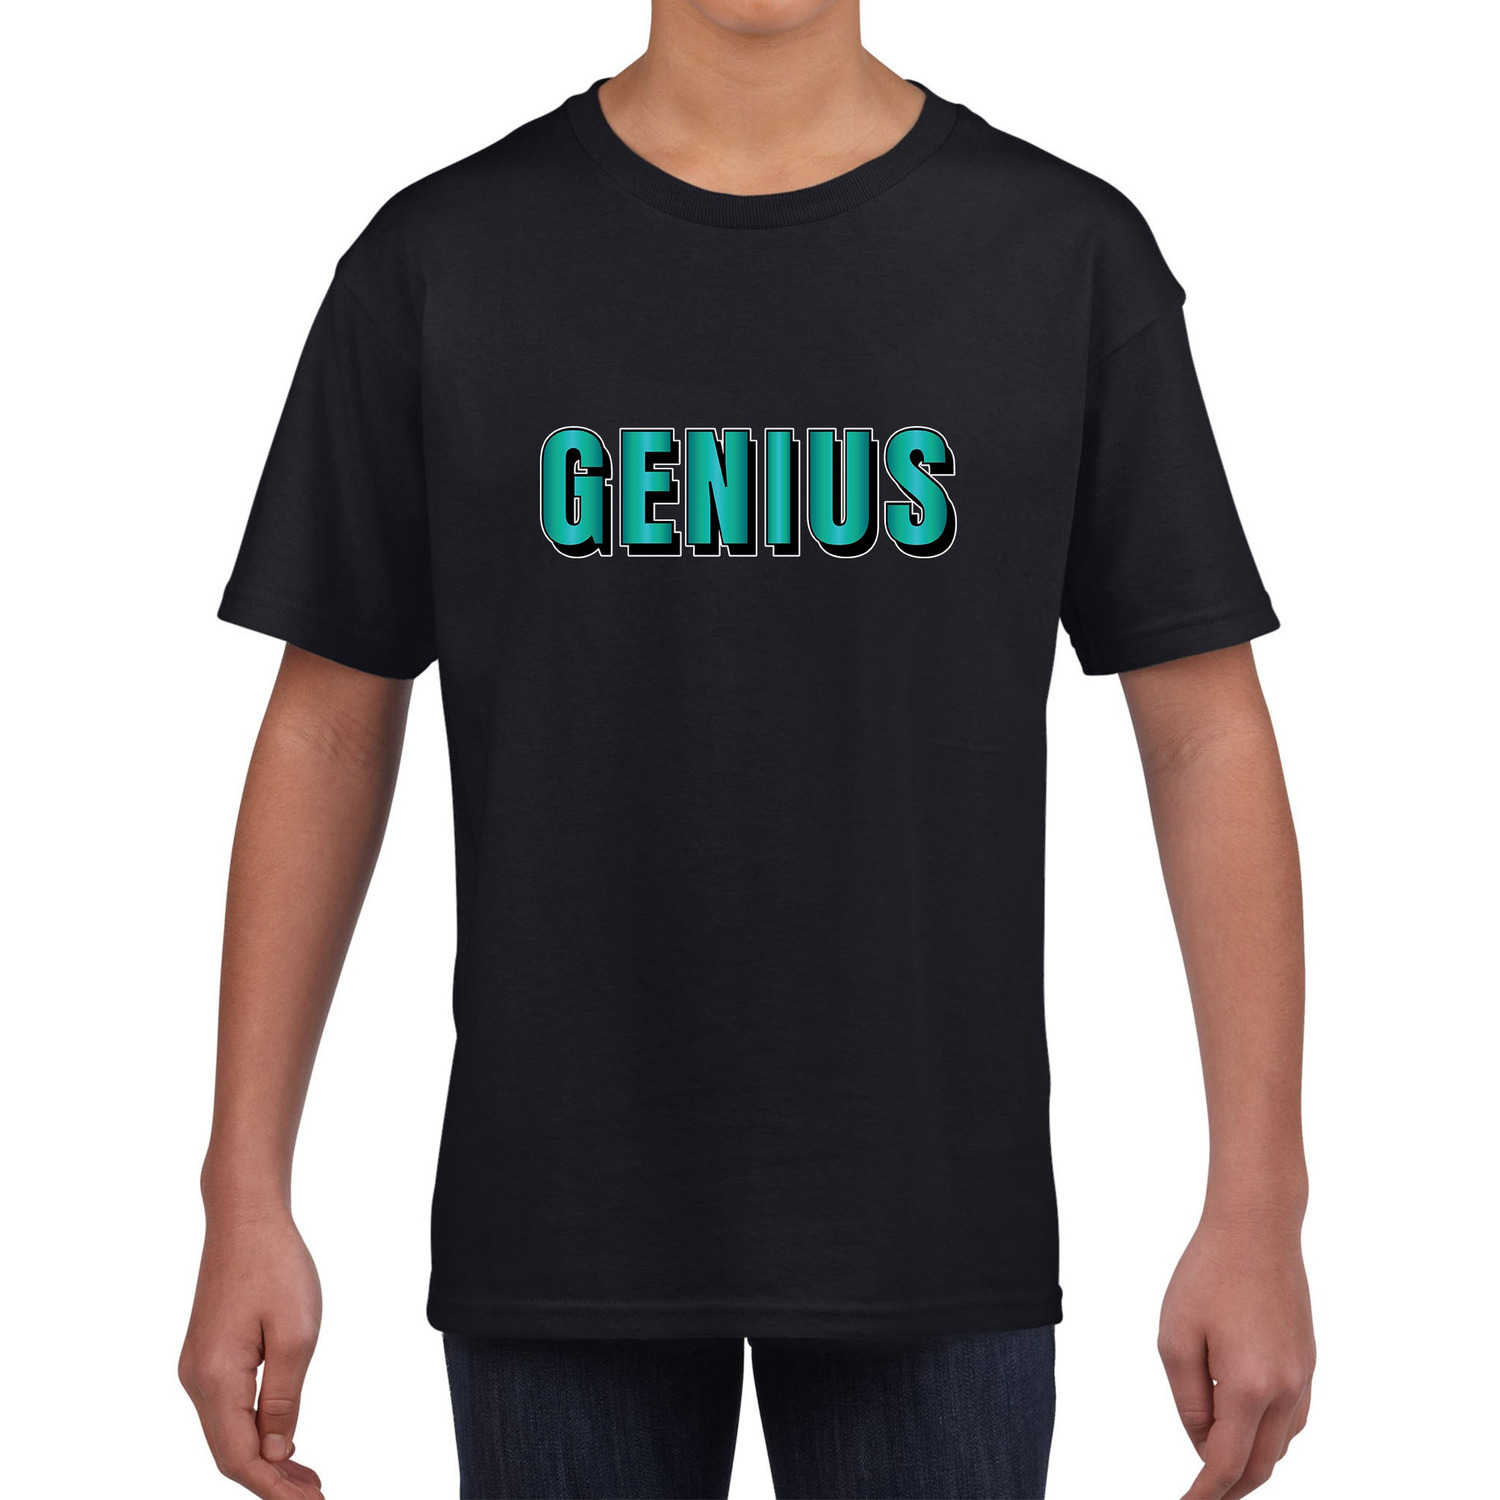 Genius tekst zwart t-shirt blauwe/groene letters voor kinderen